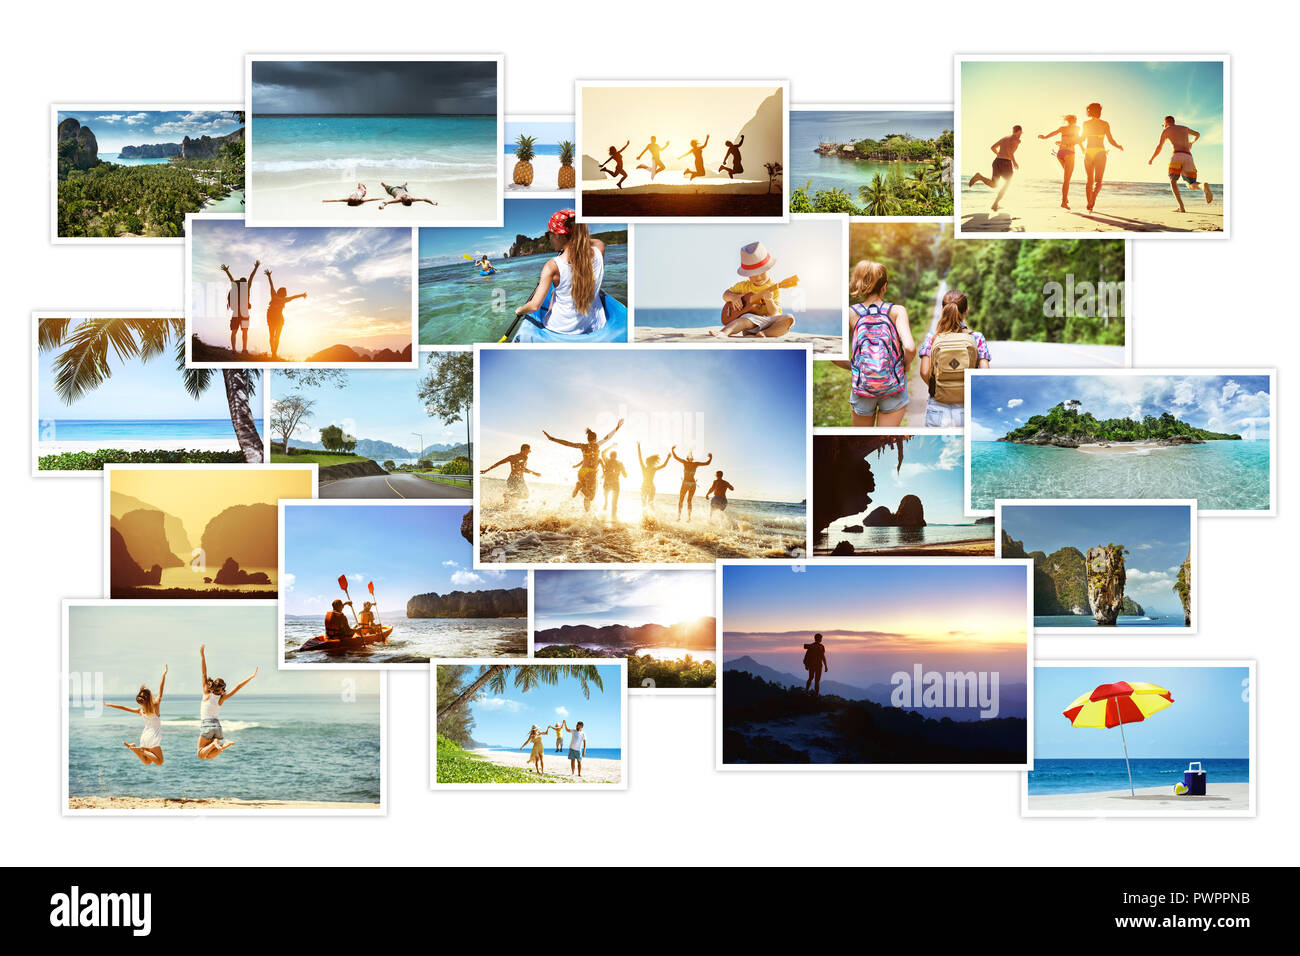 Collage de fotos con paisajes tropicales y pueblos. Concepto de vacaciones al mar Foto de stock